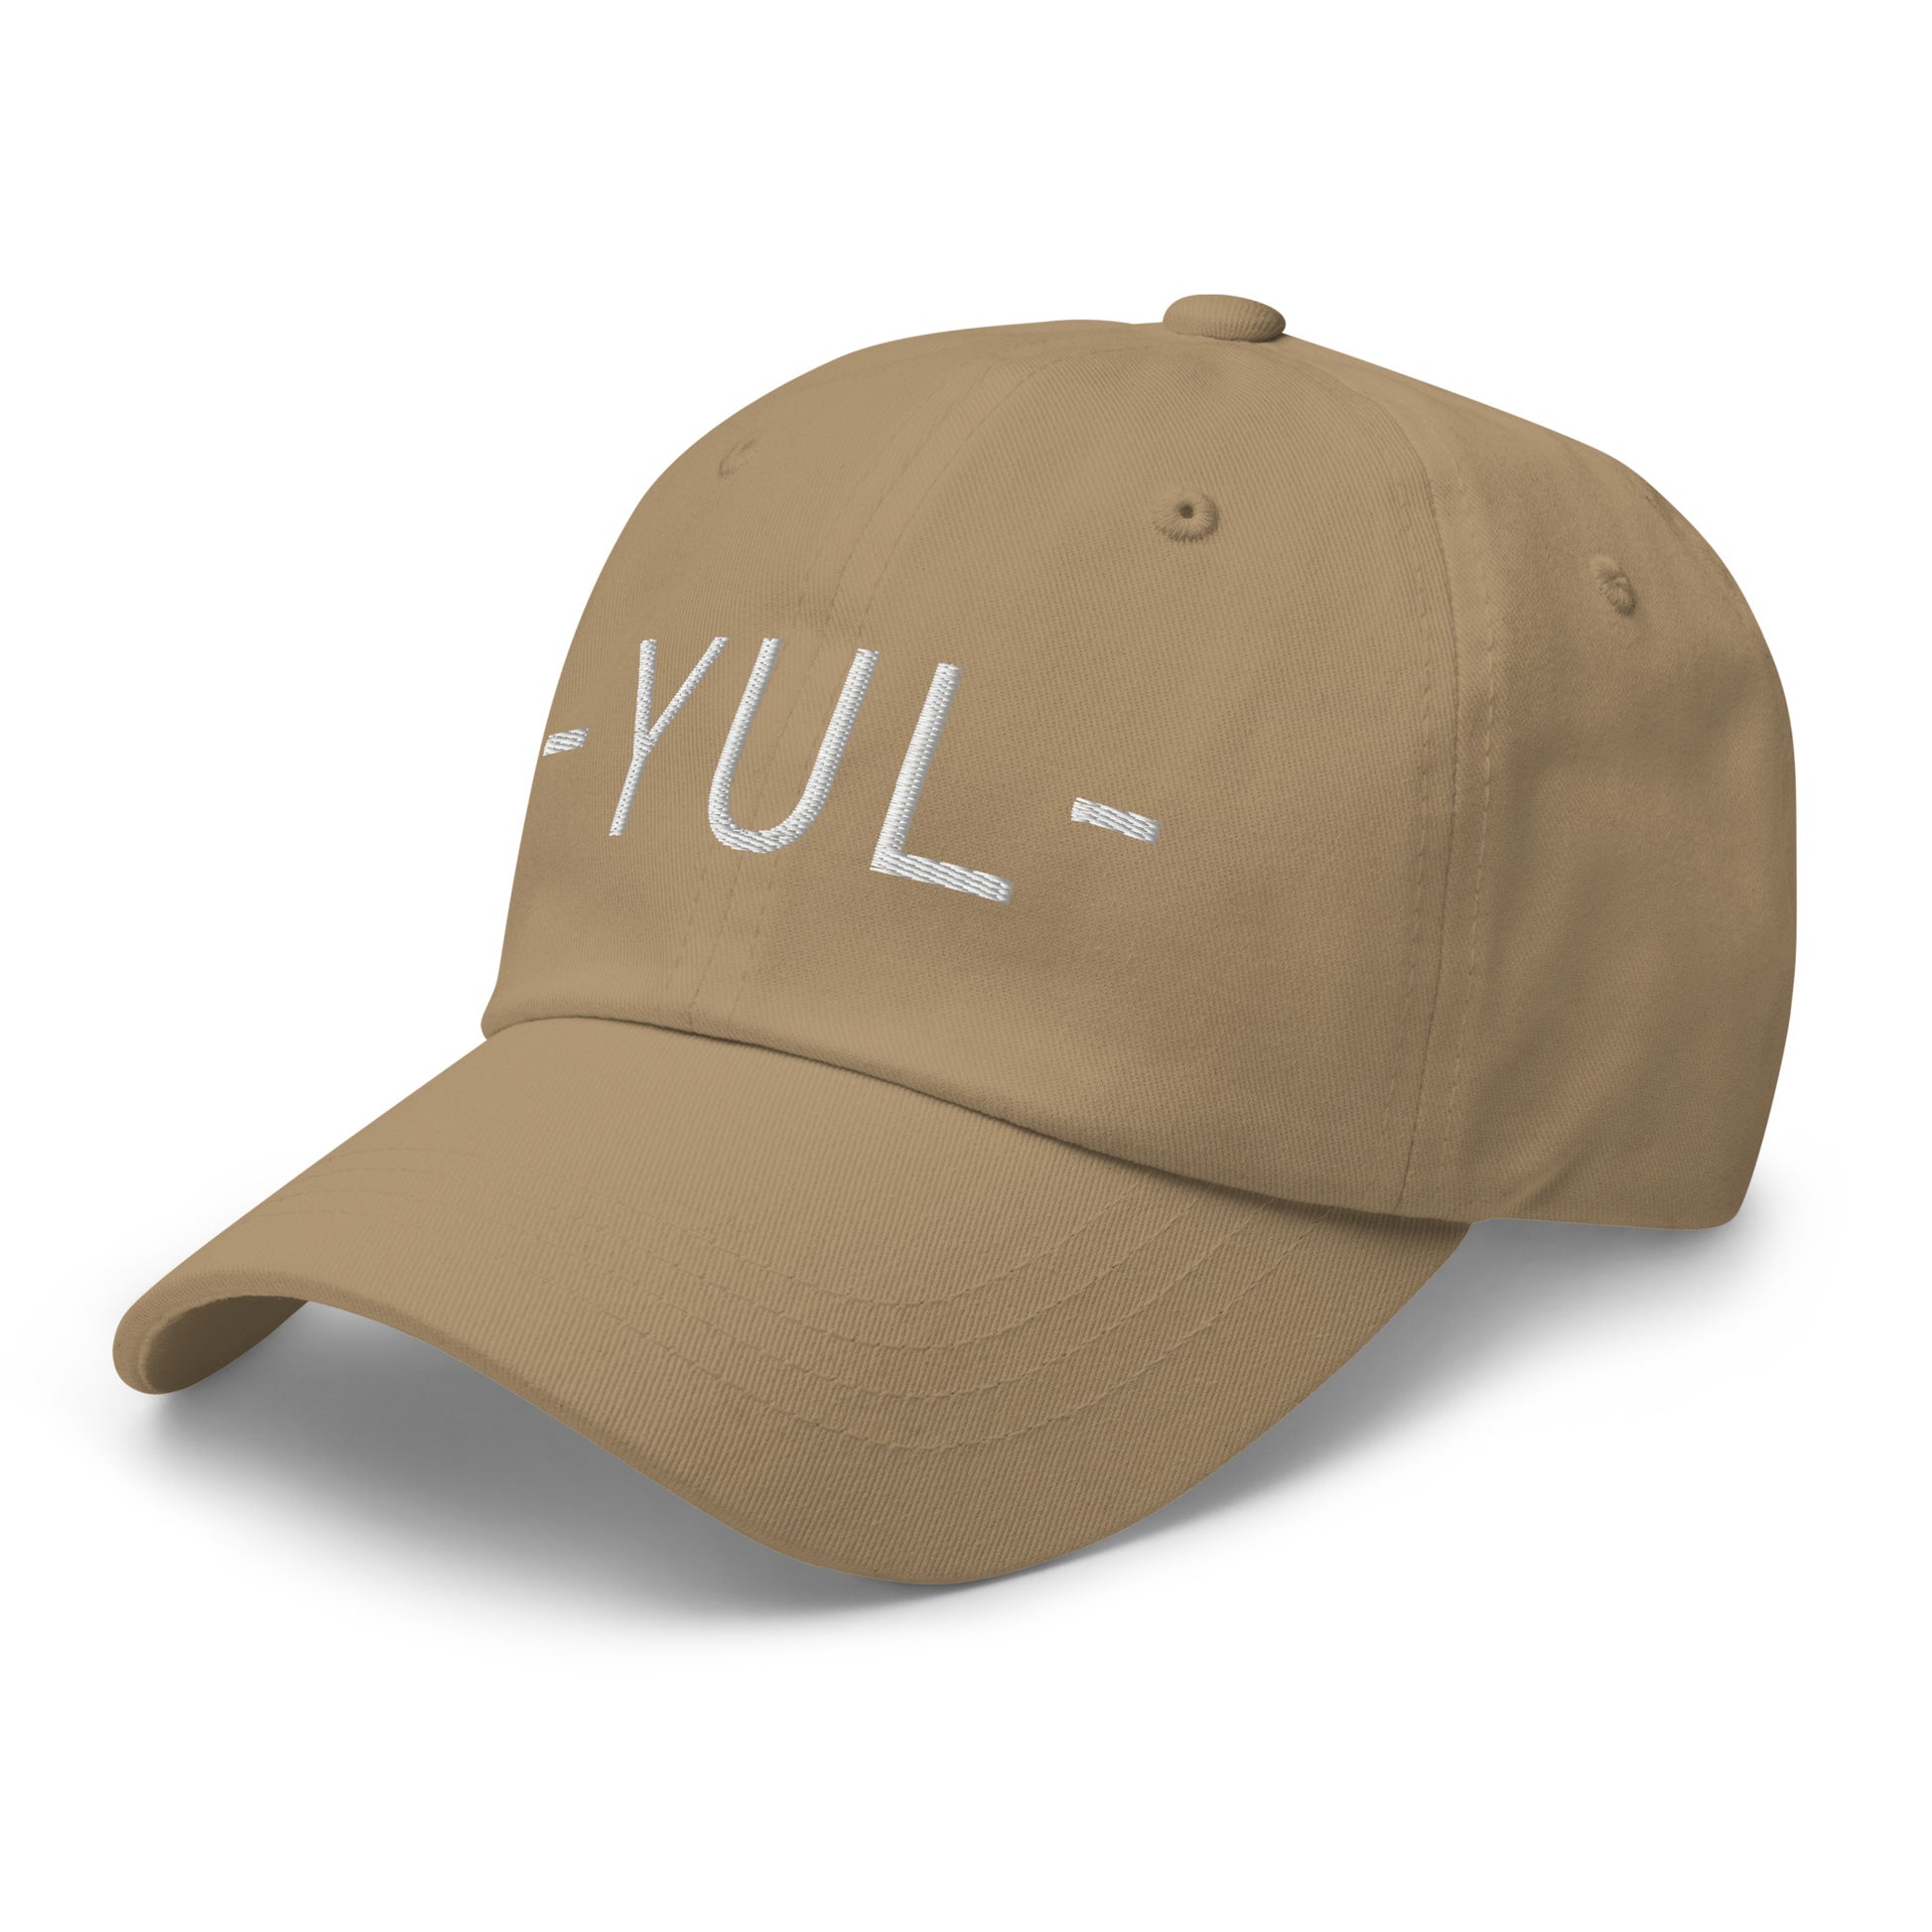 Souvenir Baseball Cap - White • YUL Montreal • YHM Designs - Image 22